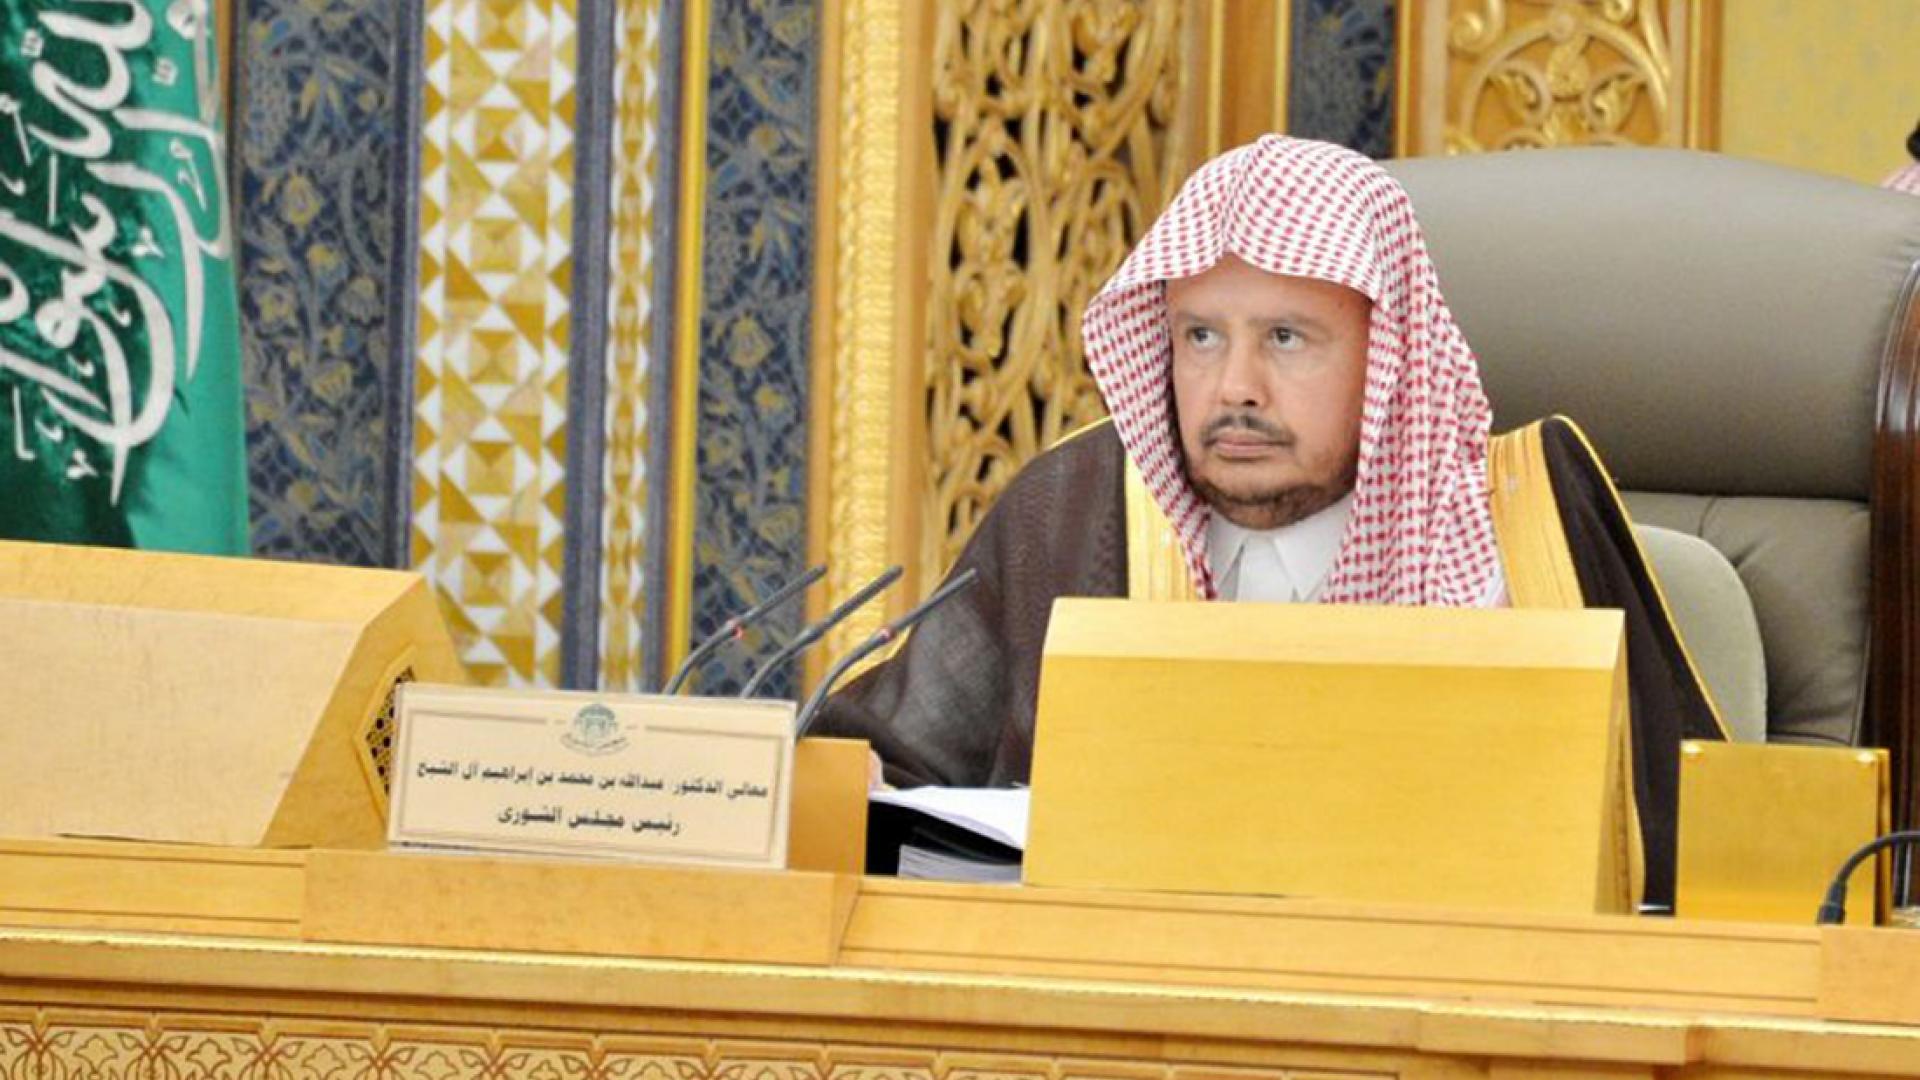   رئيس «الشورى» السعودي: المملكة تصد هجمات مفتعلة والحقائق لن تتحول